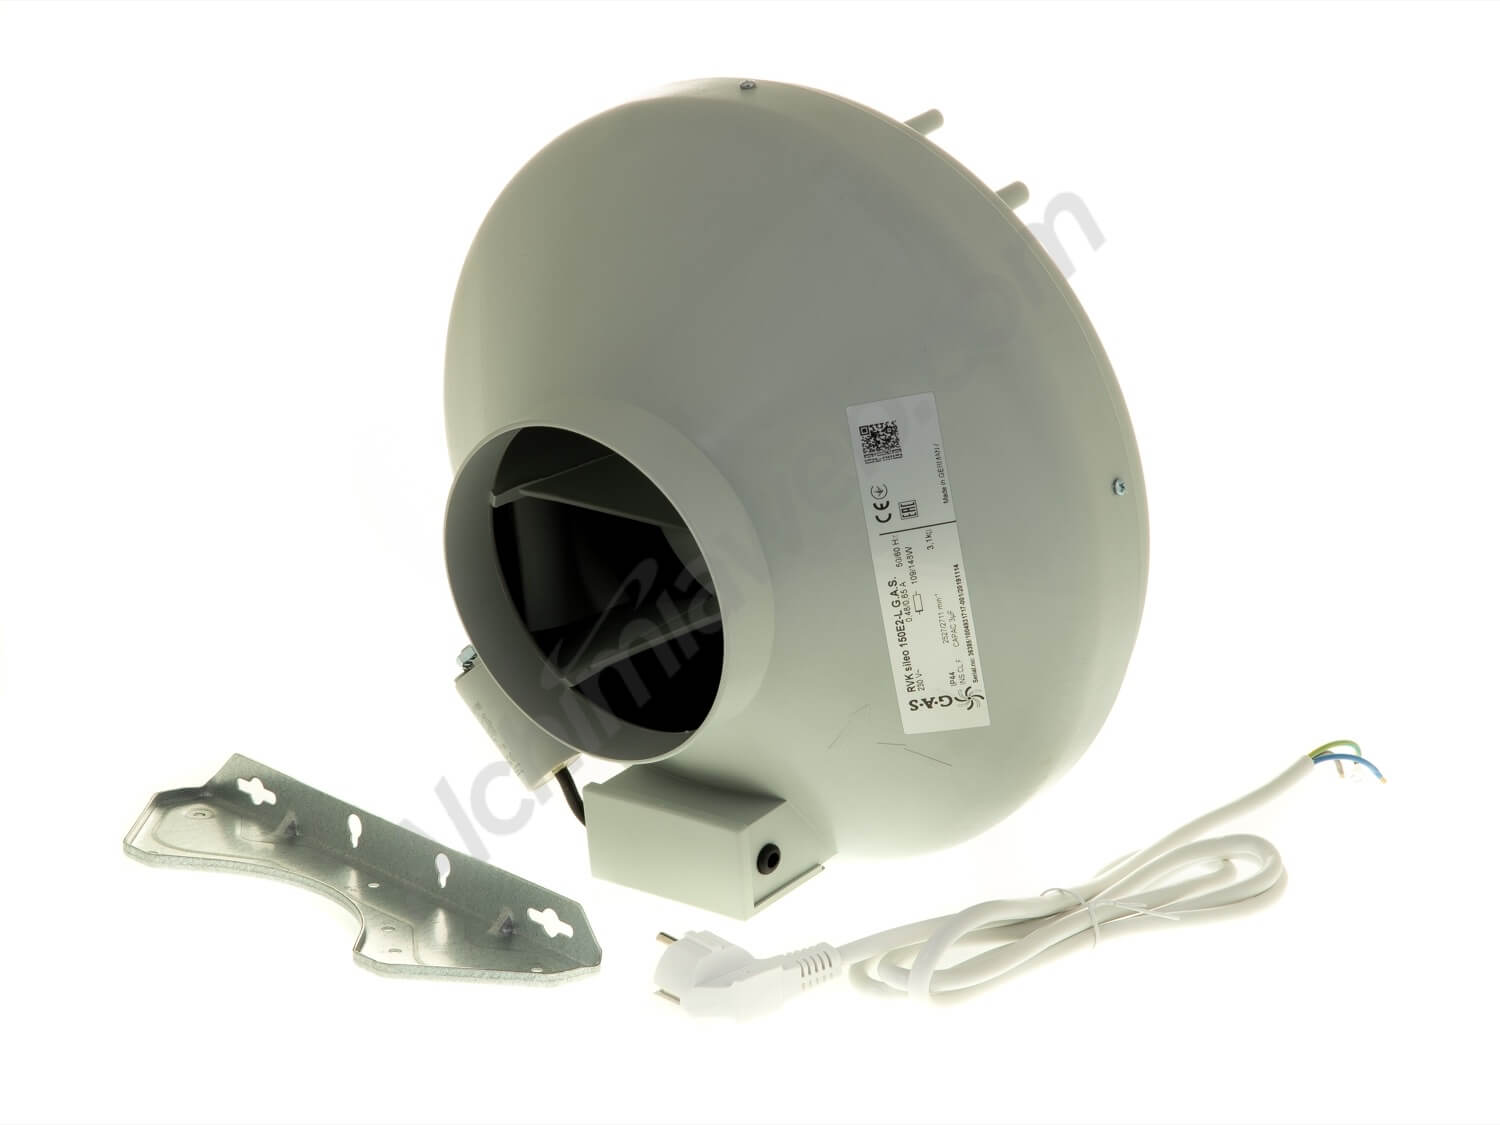 Rhino ventilateur vitesse unique de 6 " 150mm A1 faible puissance inline extracteur hydroponics RVK 